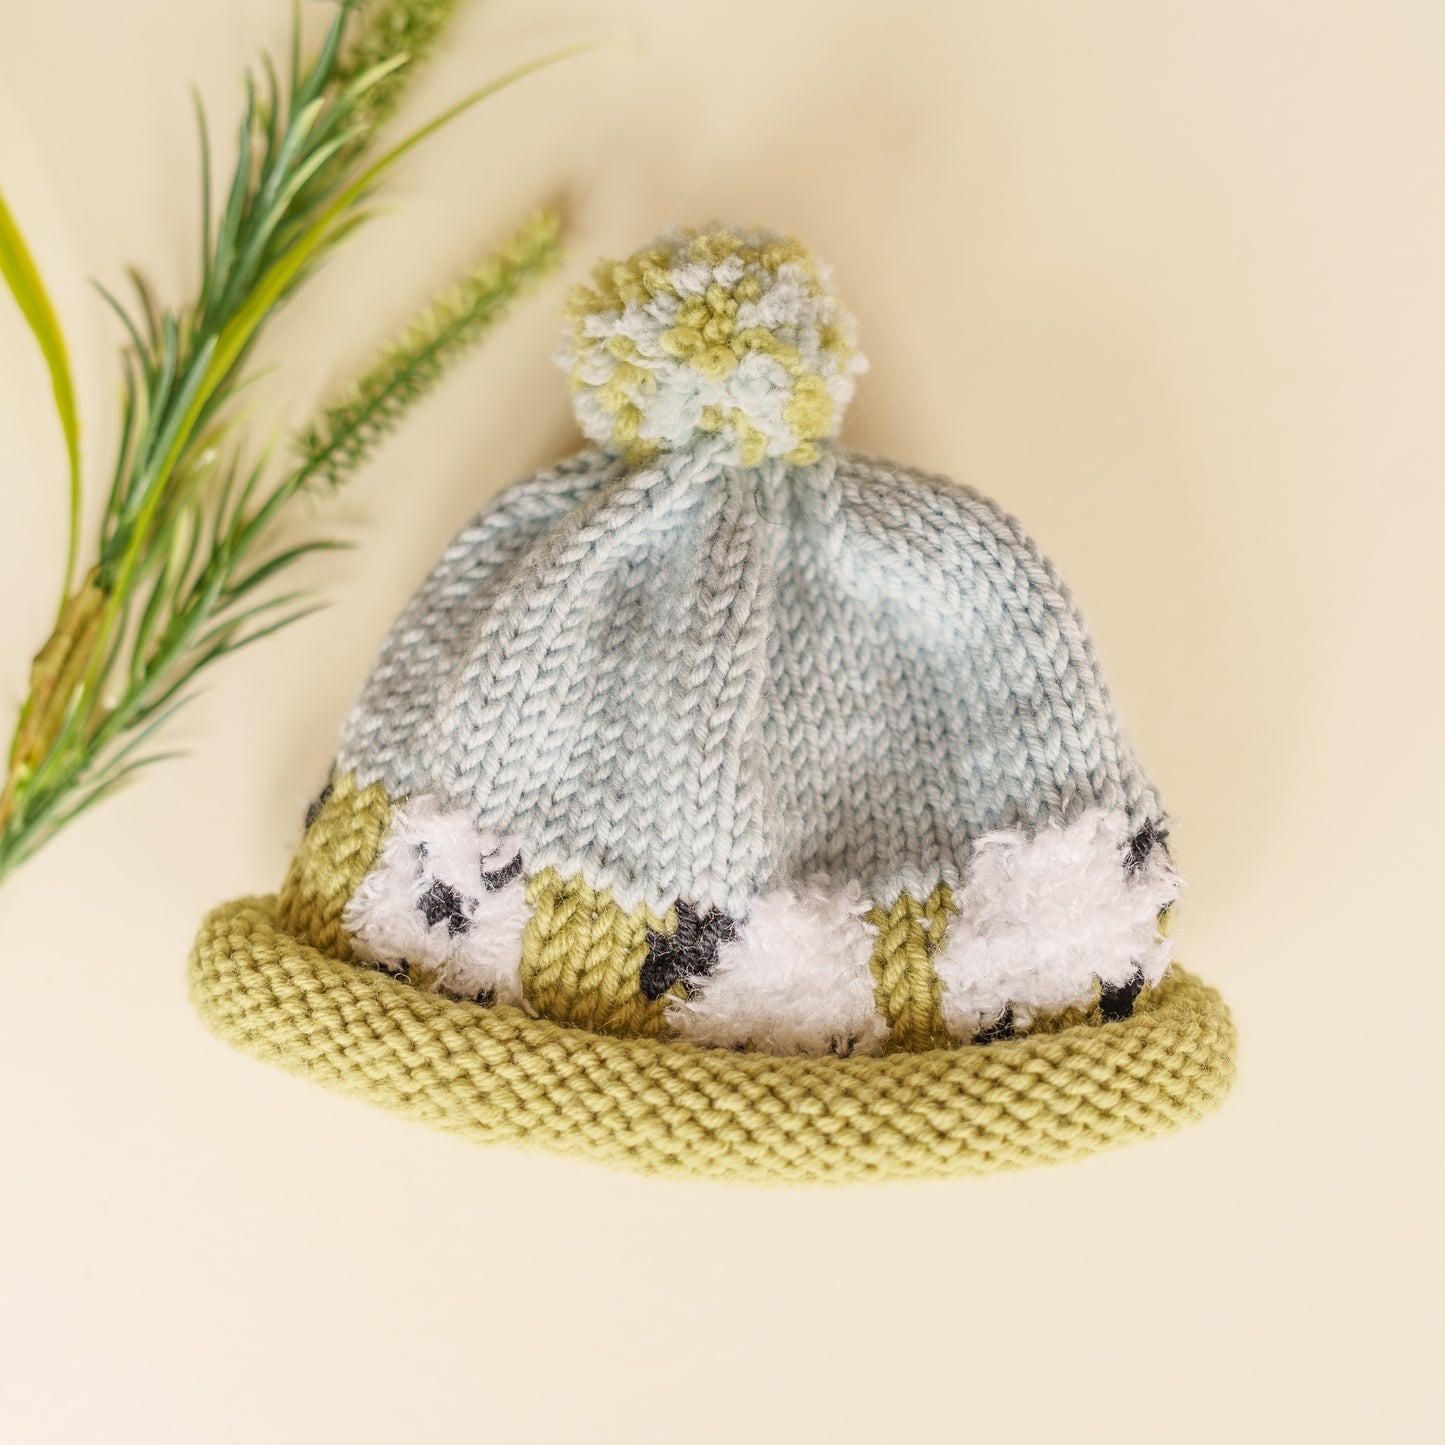 Sheep Bobble Hats - Handmade